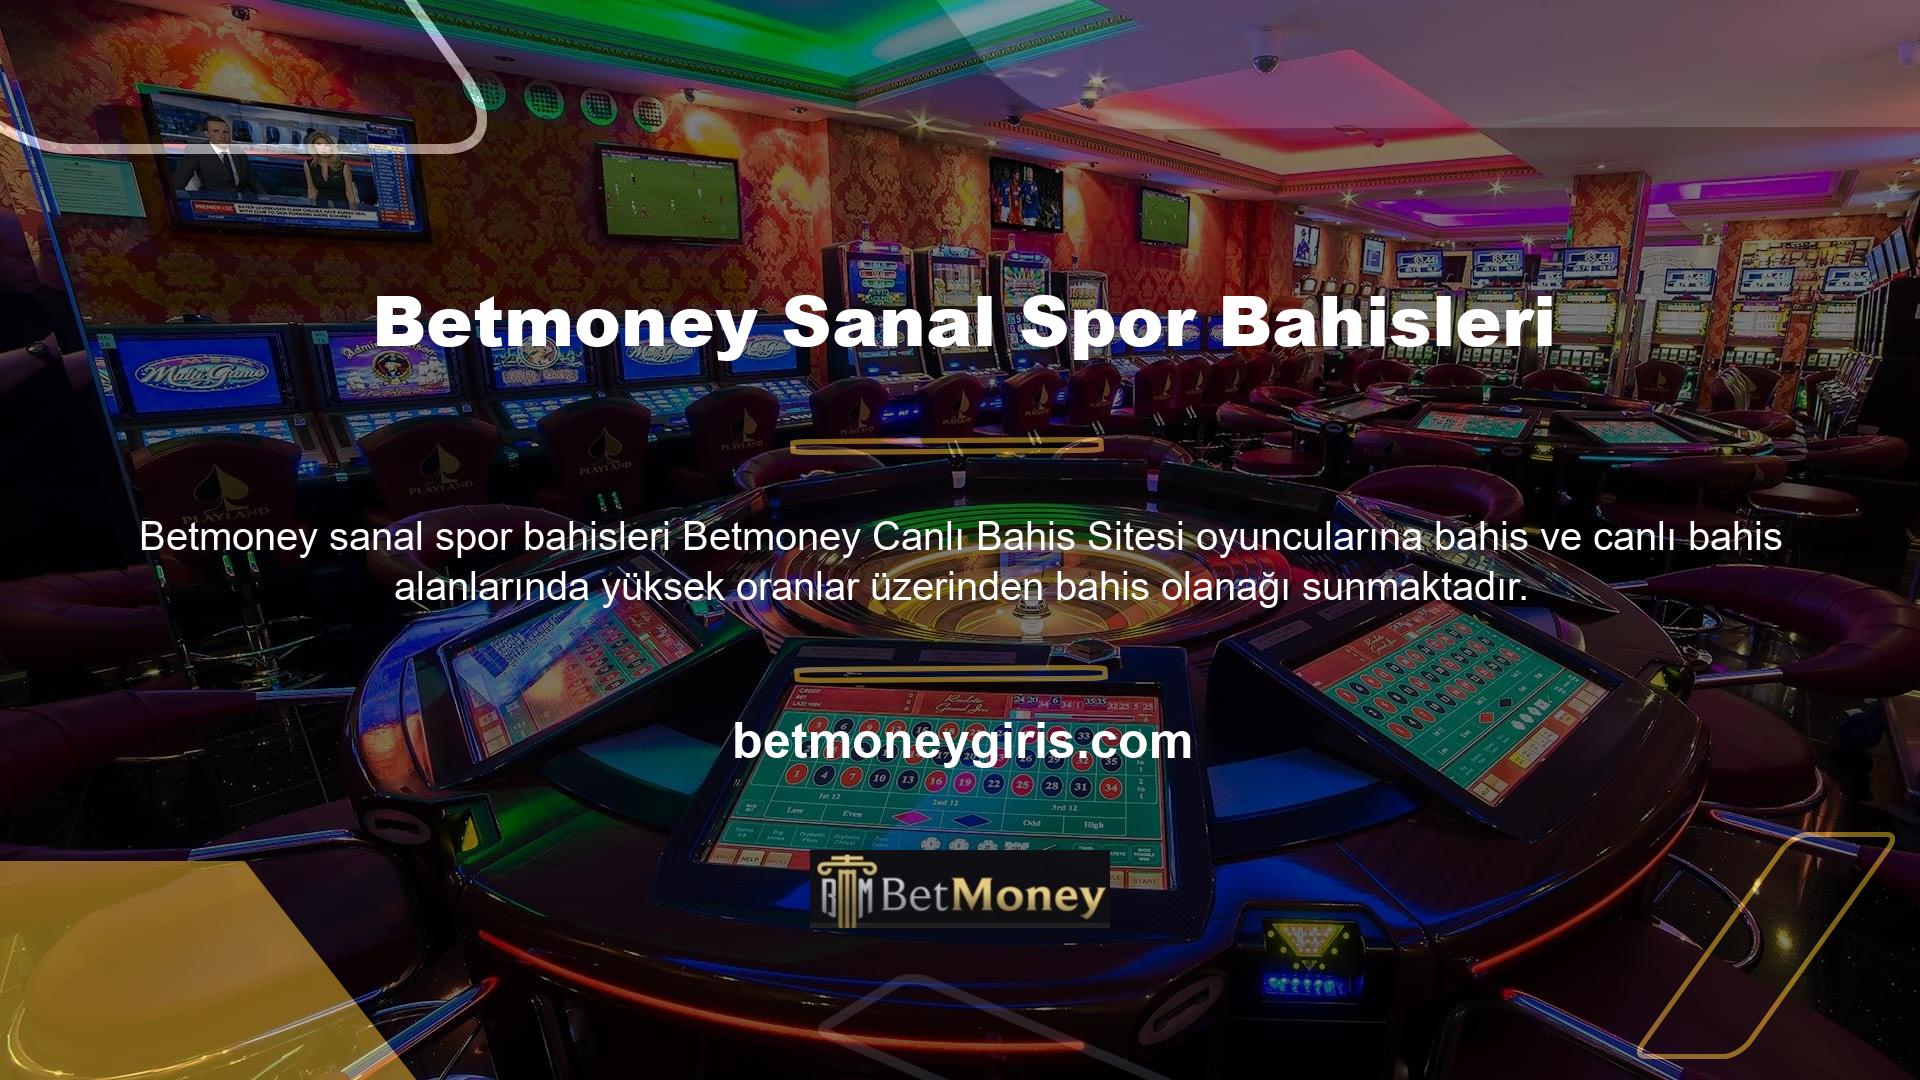 Ayrıca sanal bahis oranları en yüksek olan Betmoney canlı casino sayfasında son yıllarda bilinen sanal bahis seçeneklerine de ulaşabilirsiniz